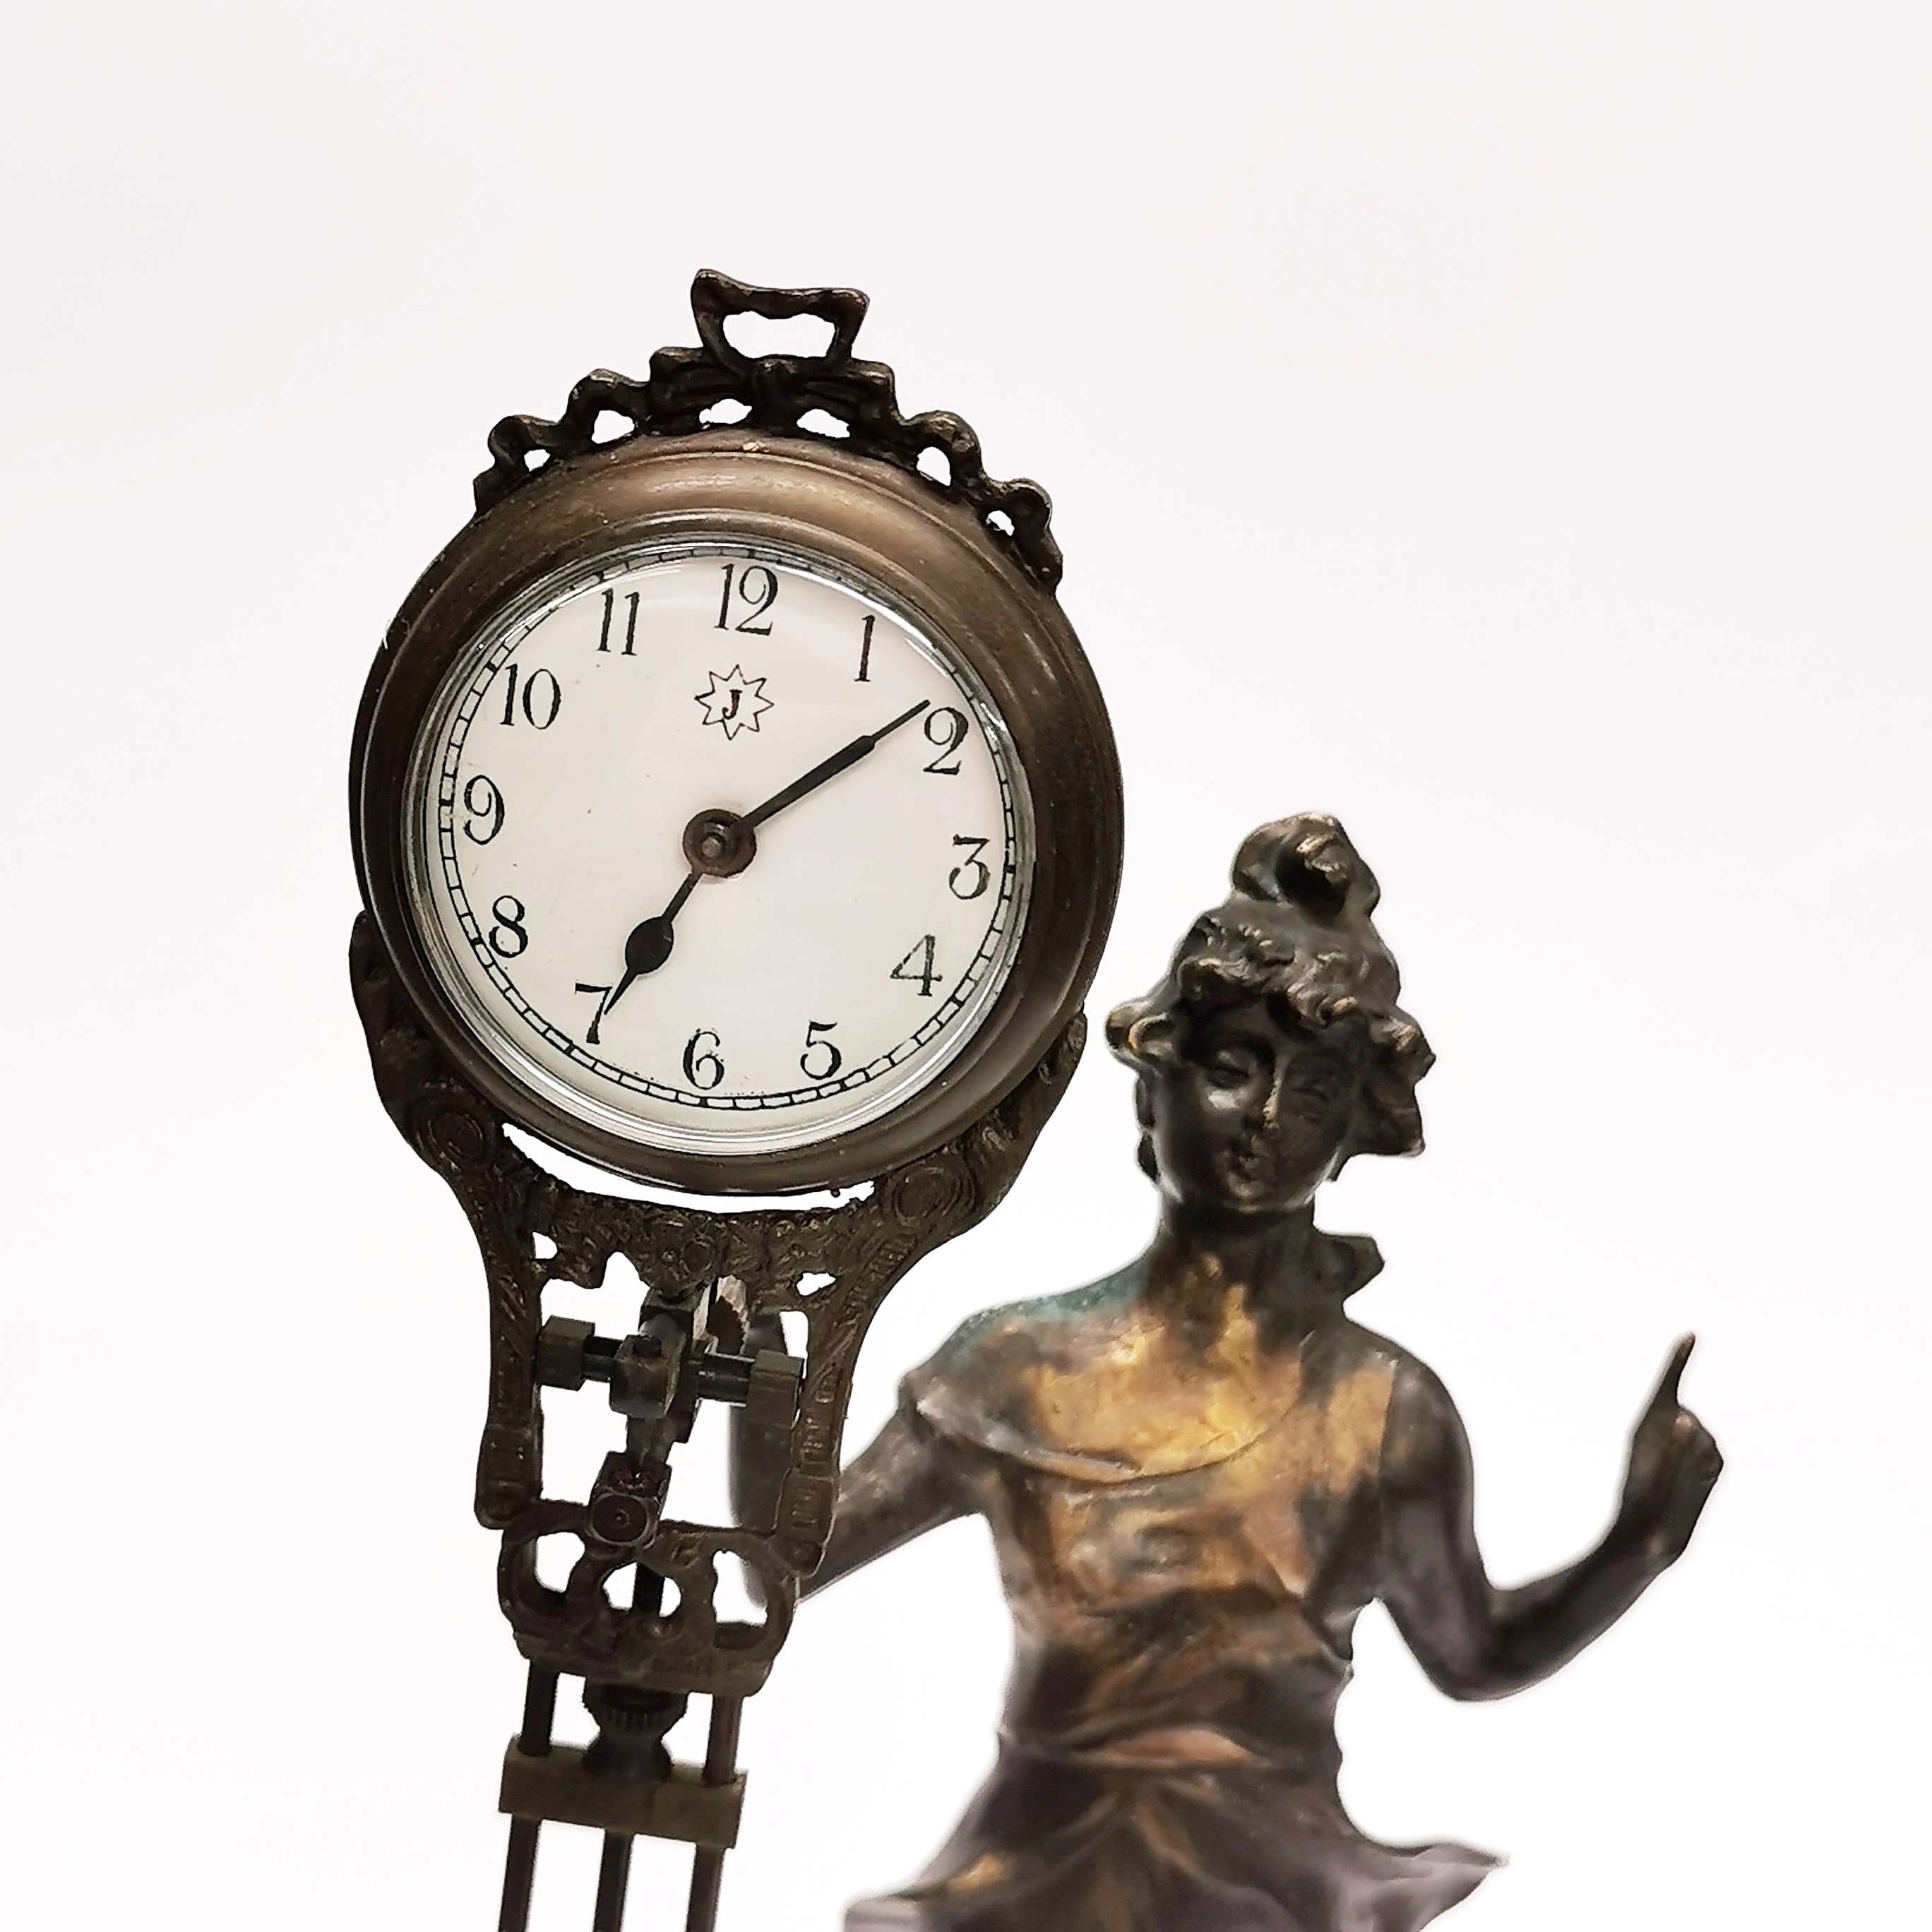 An Art Nouveau style bronze clock, H. 34cm. - Image 3 of 4